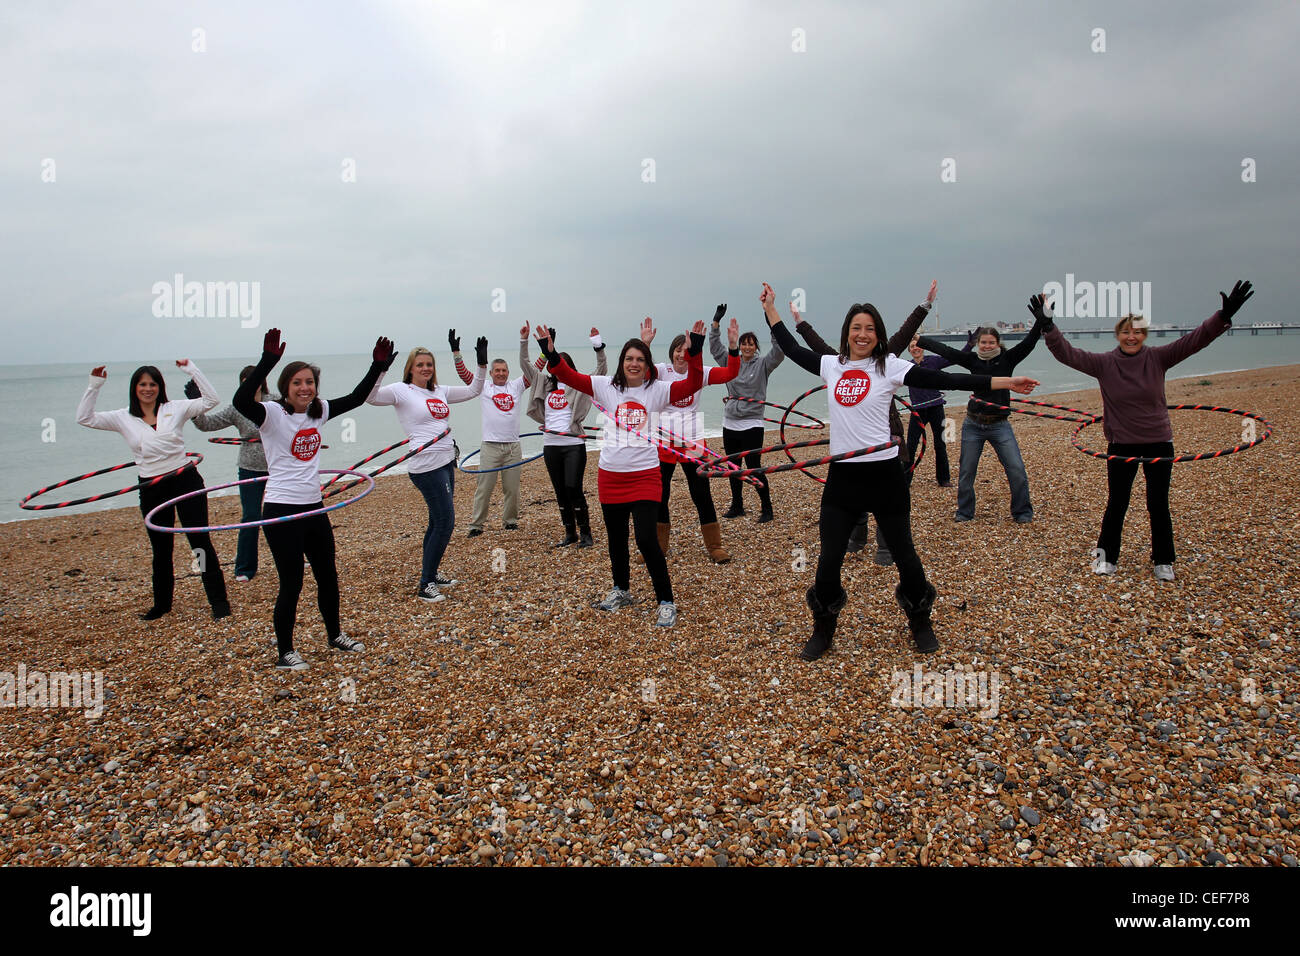 Gruppo di persone che partecipano a sport Relief 2012, Hula cerchiatura in strada. Essi sono illustrati sulla Spiaggia di Brighton, East Sussex. Foto Stock